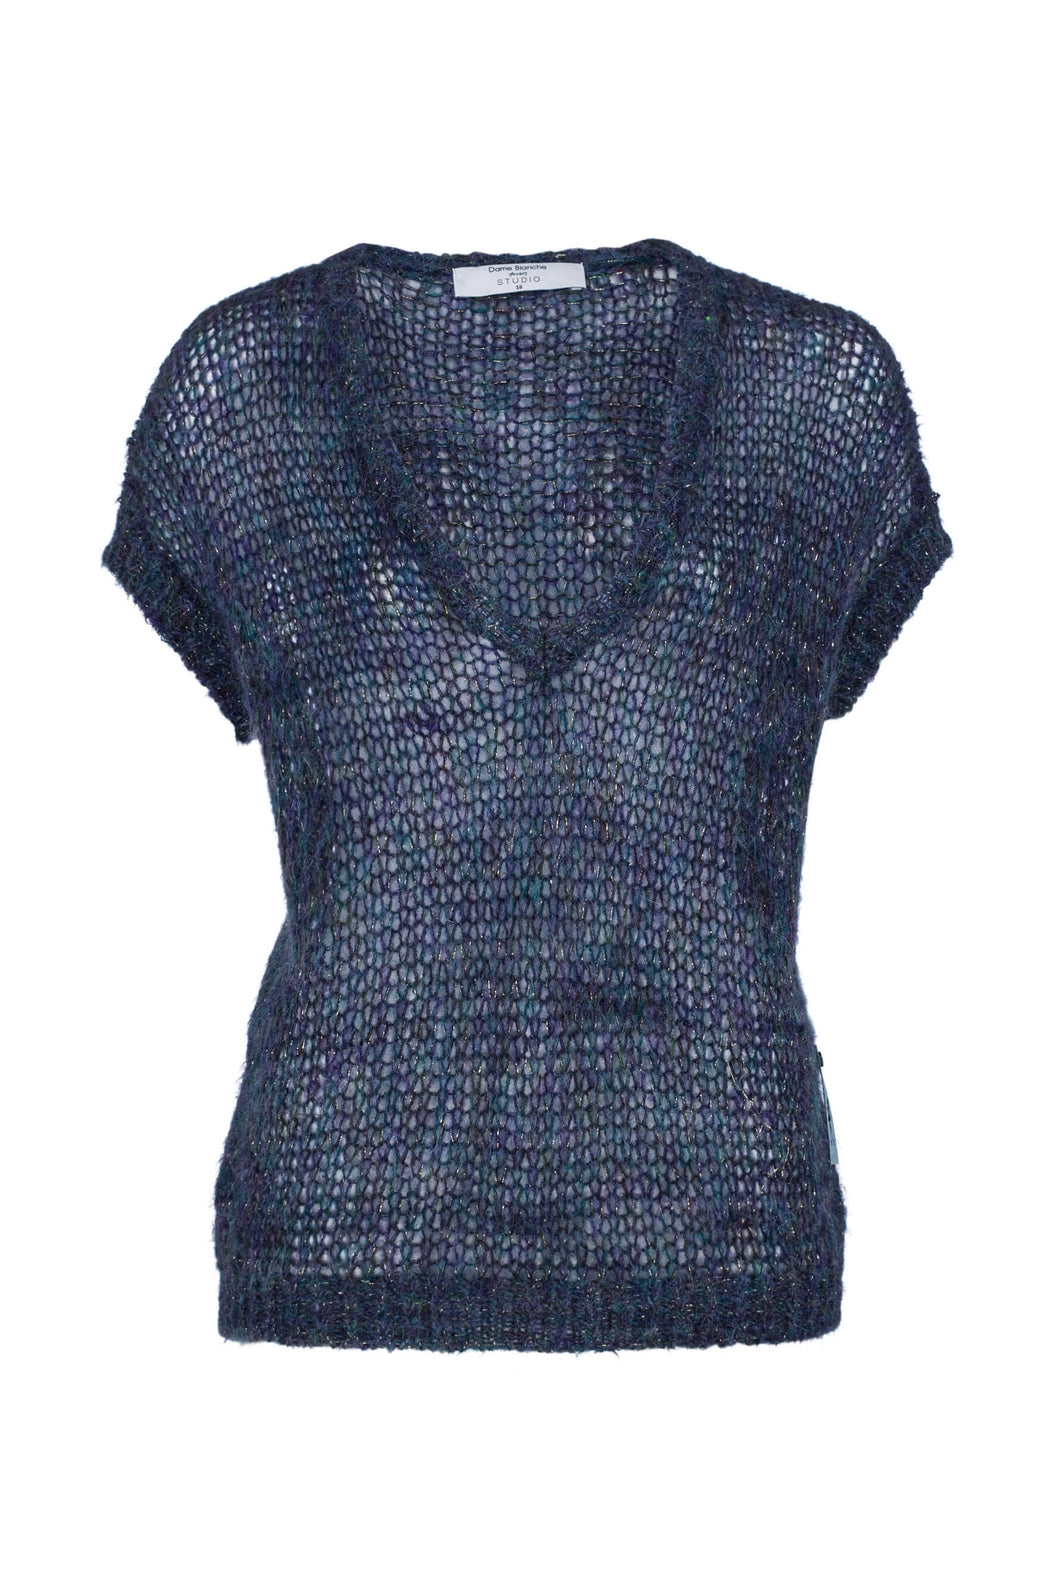 Dame Blanche Top Carine 490 Soft Pull Groen/blauw is een mooie knitwear top met V-hals. Draag deze top over een longsleeve top. Deze top pull is verkrijgbaar in de kleuren : Ecru, Groen/blauw, Roze.